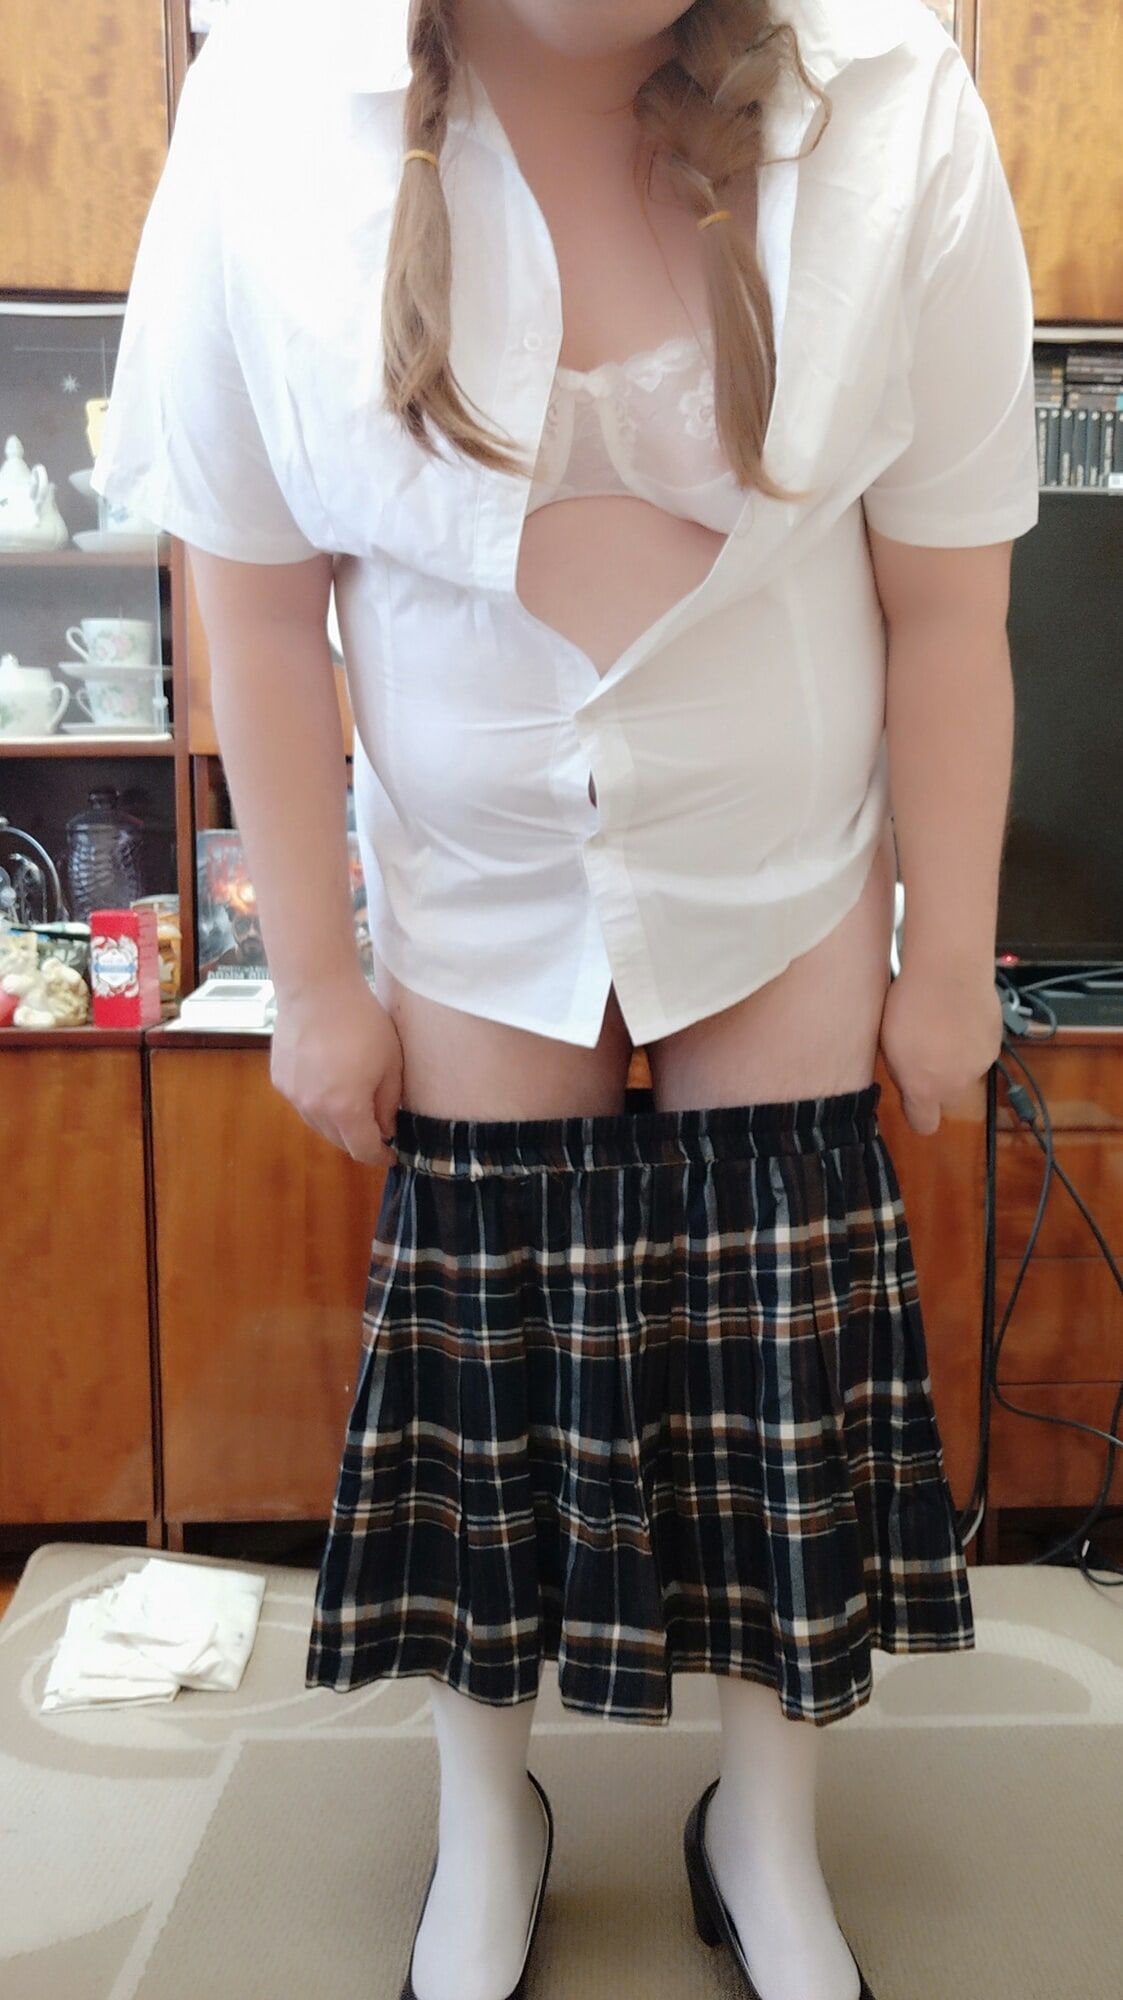 Sissy posing in school uniforms #46